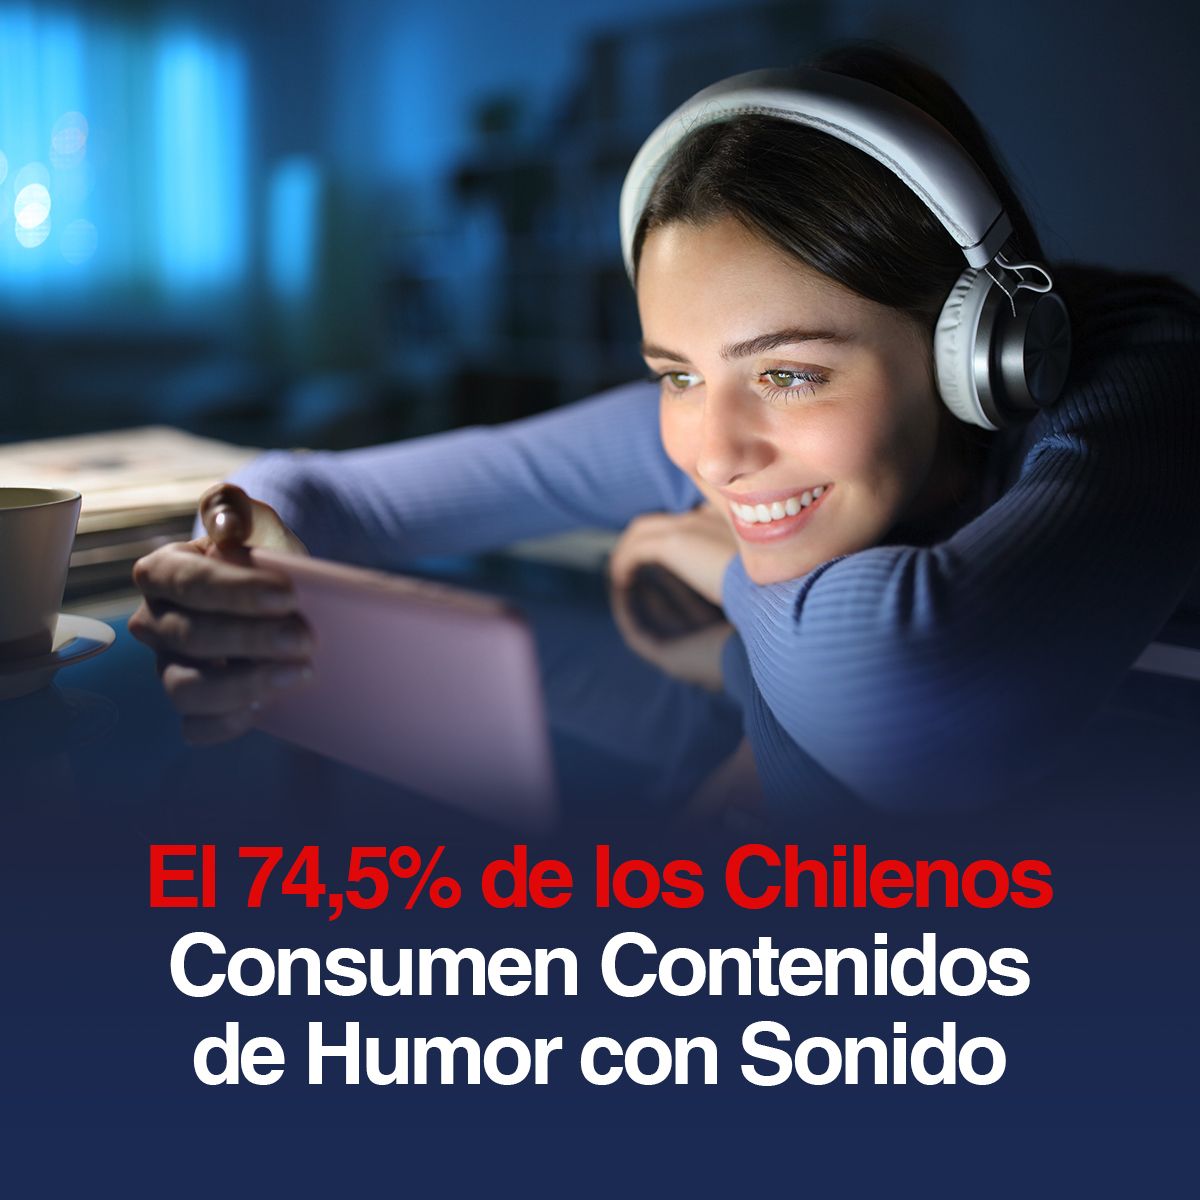 El 74,5% de los Chilenos Consumen Contenidos de Humor con Sonido